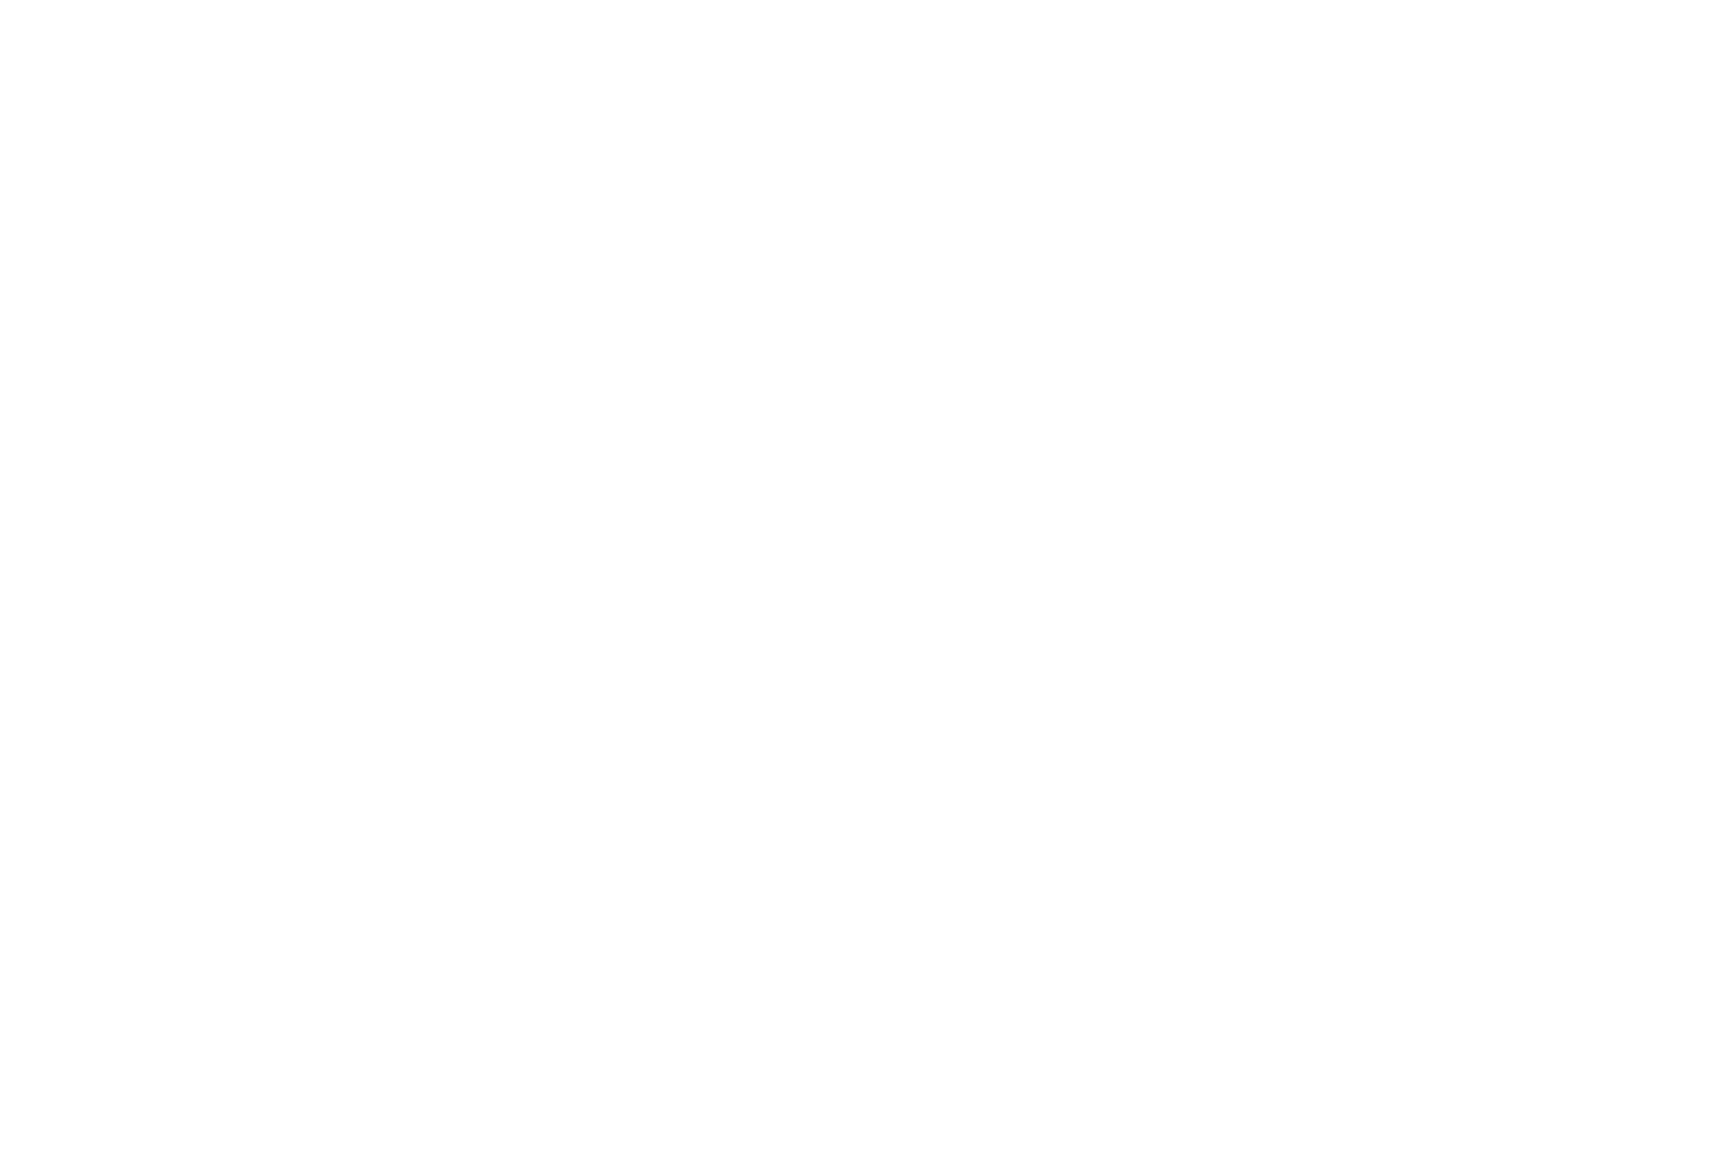 Winner Best Actress Freakshow Horror Film Festival 2022